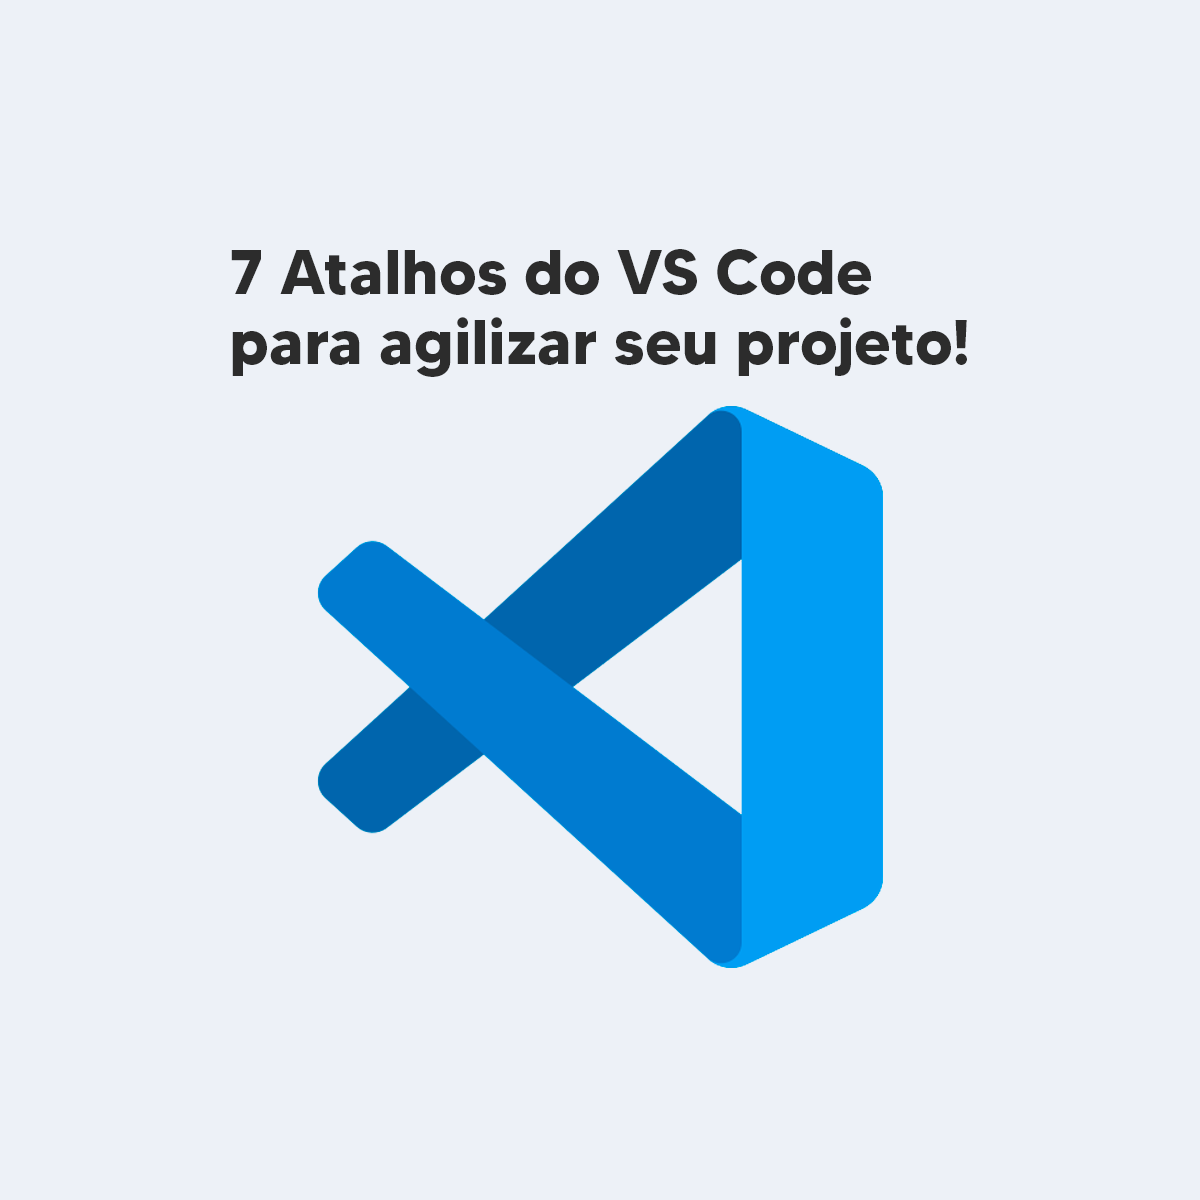 7 Atalhos do VS Code para agilizar o seu projeto